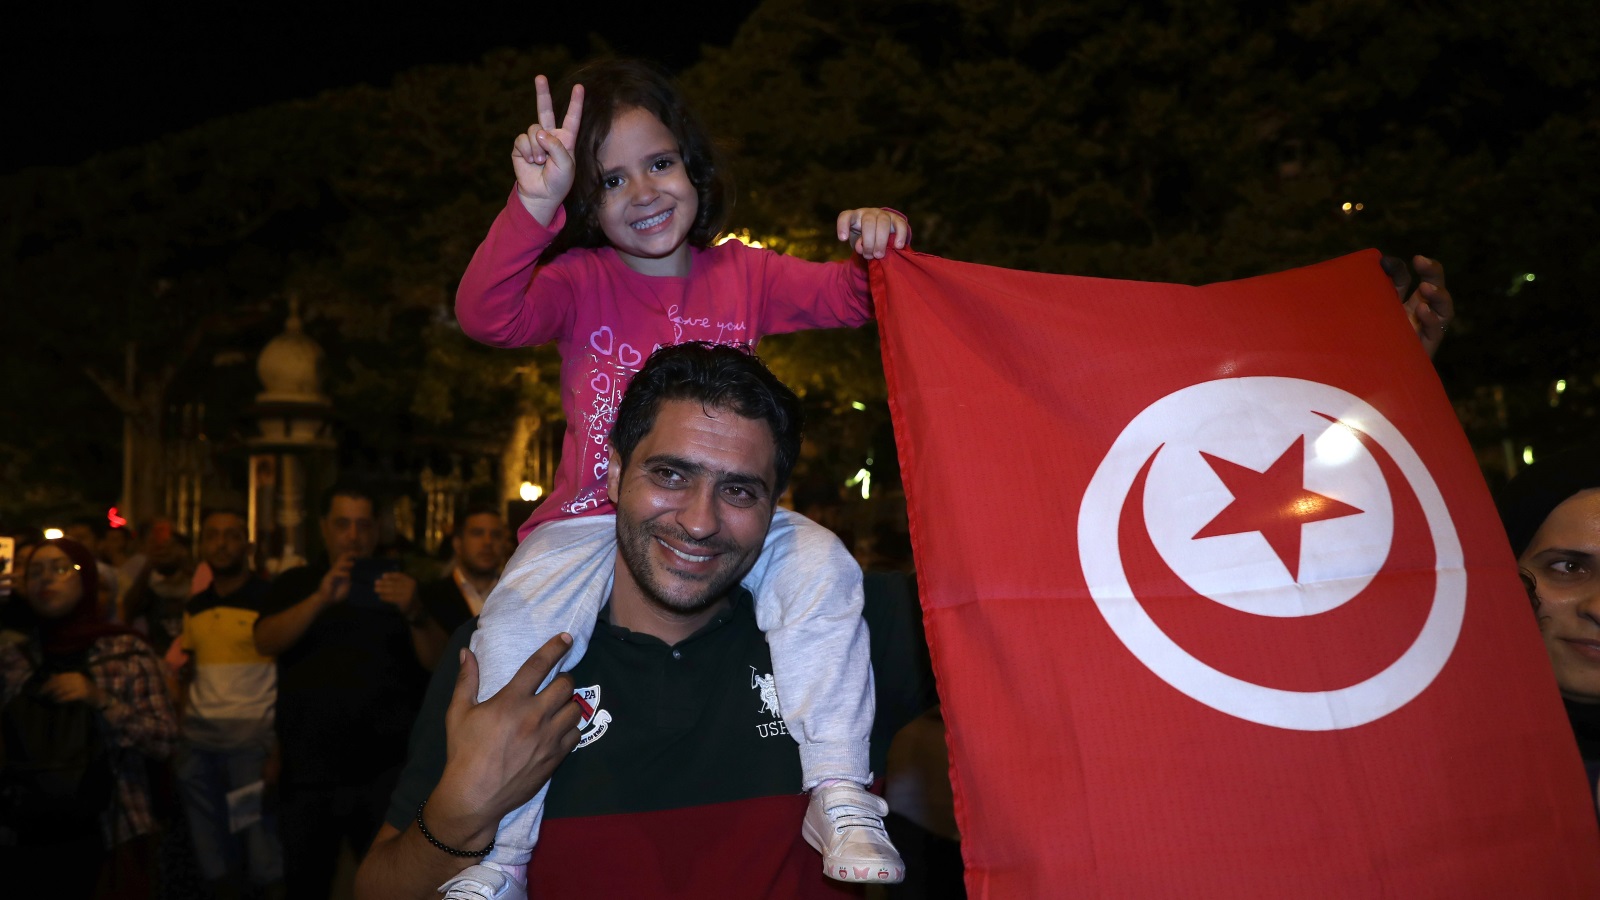 أب وابنته يحتفلان بانتصار التجربة الديمقراطية (الأوروبية)